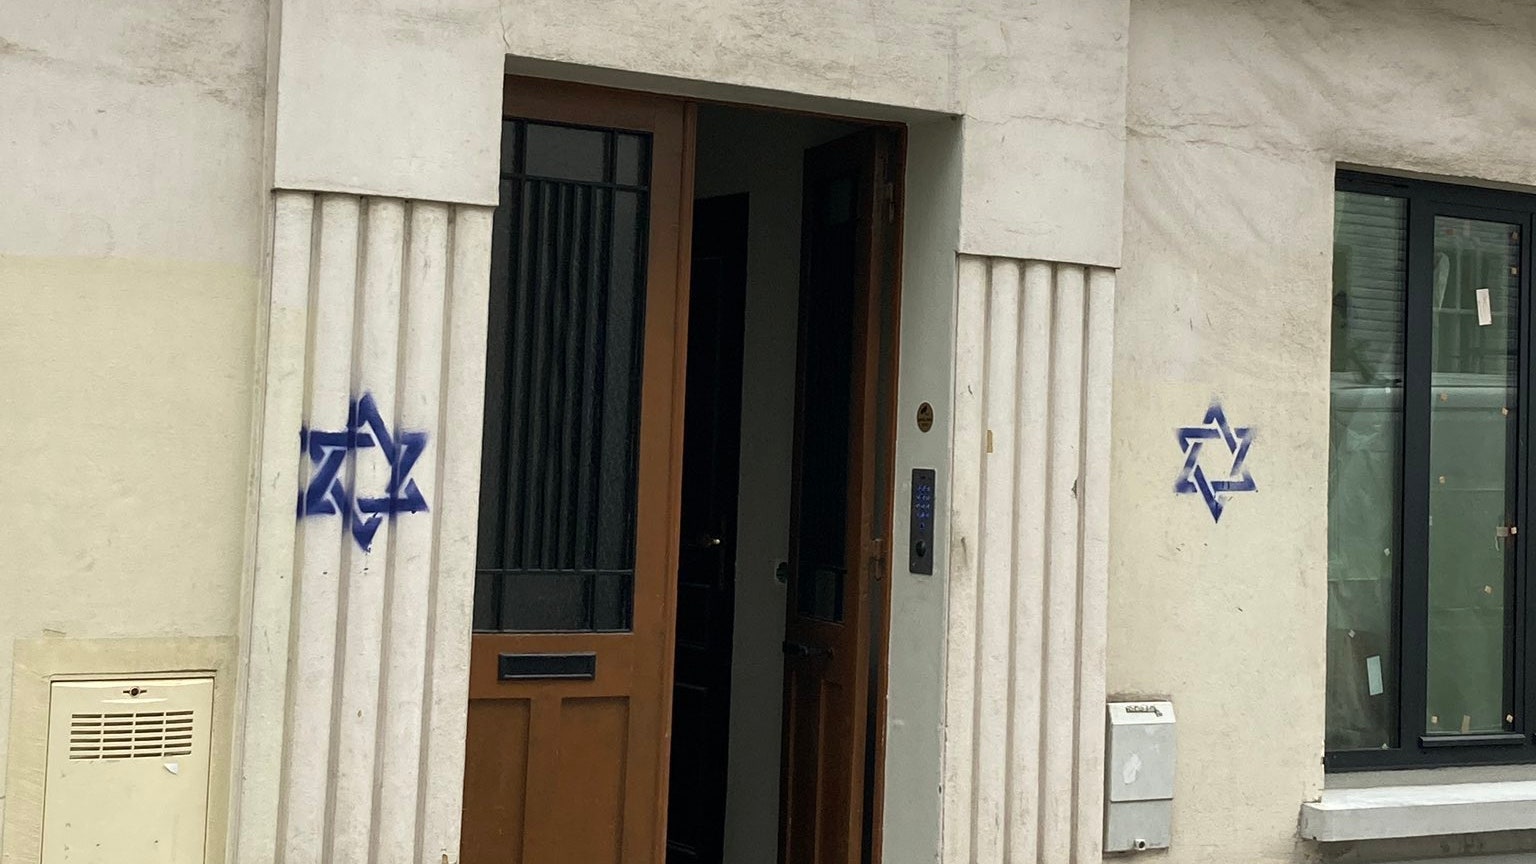 La Ue denuncia una preoccupante ondata di antisemitismo in tutta Europa